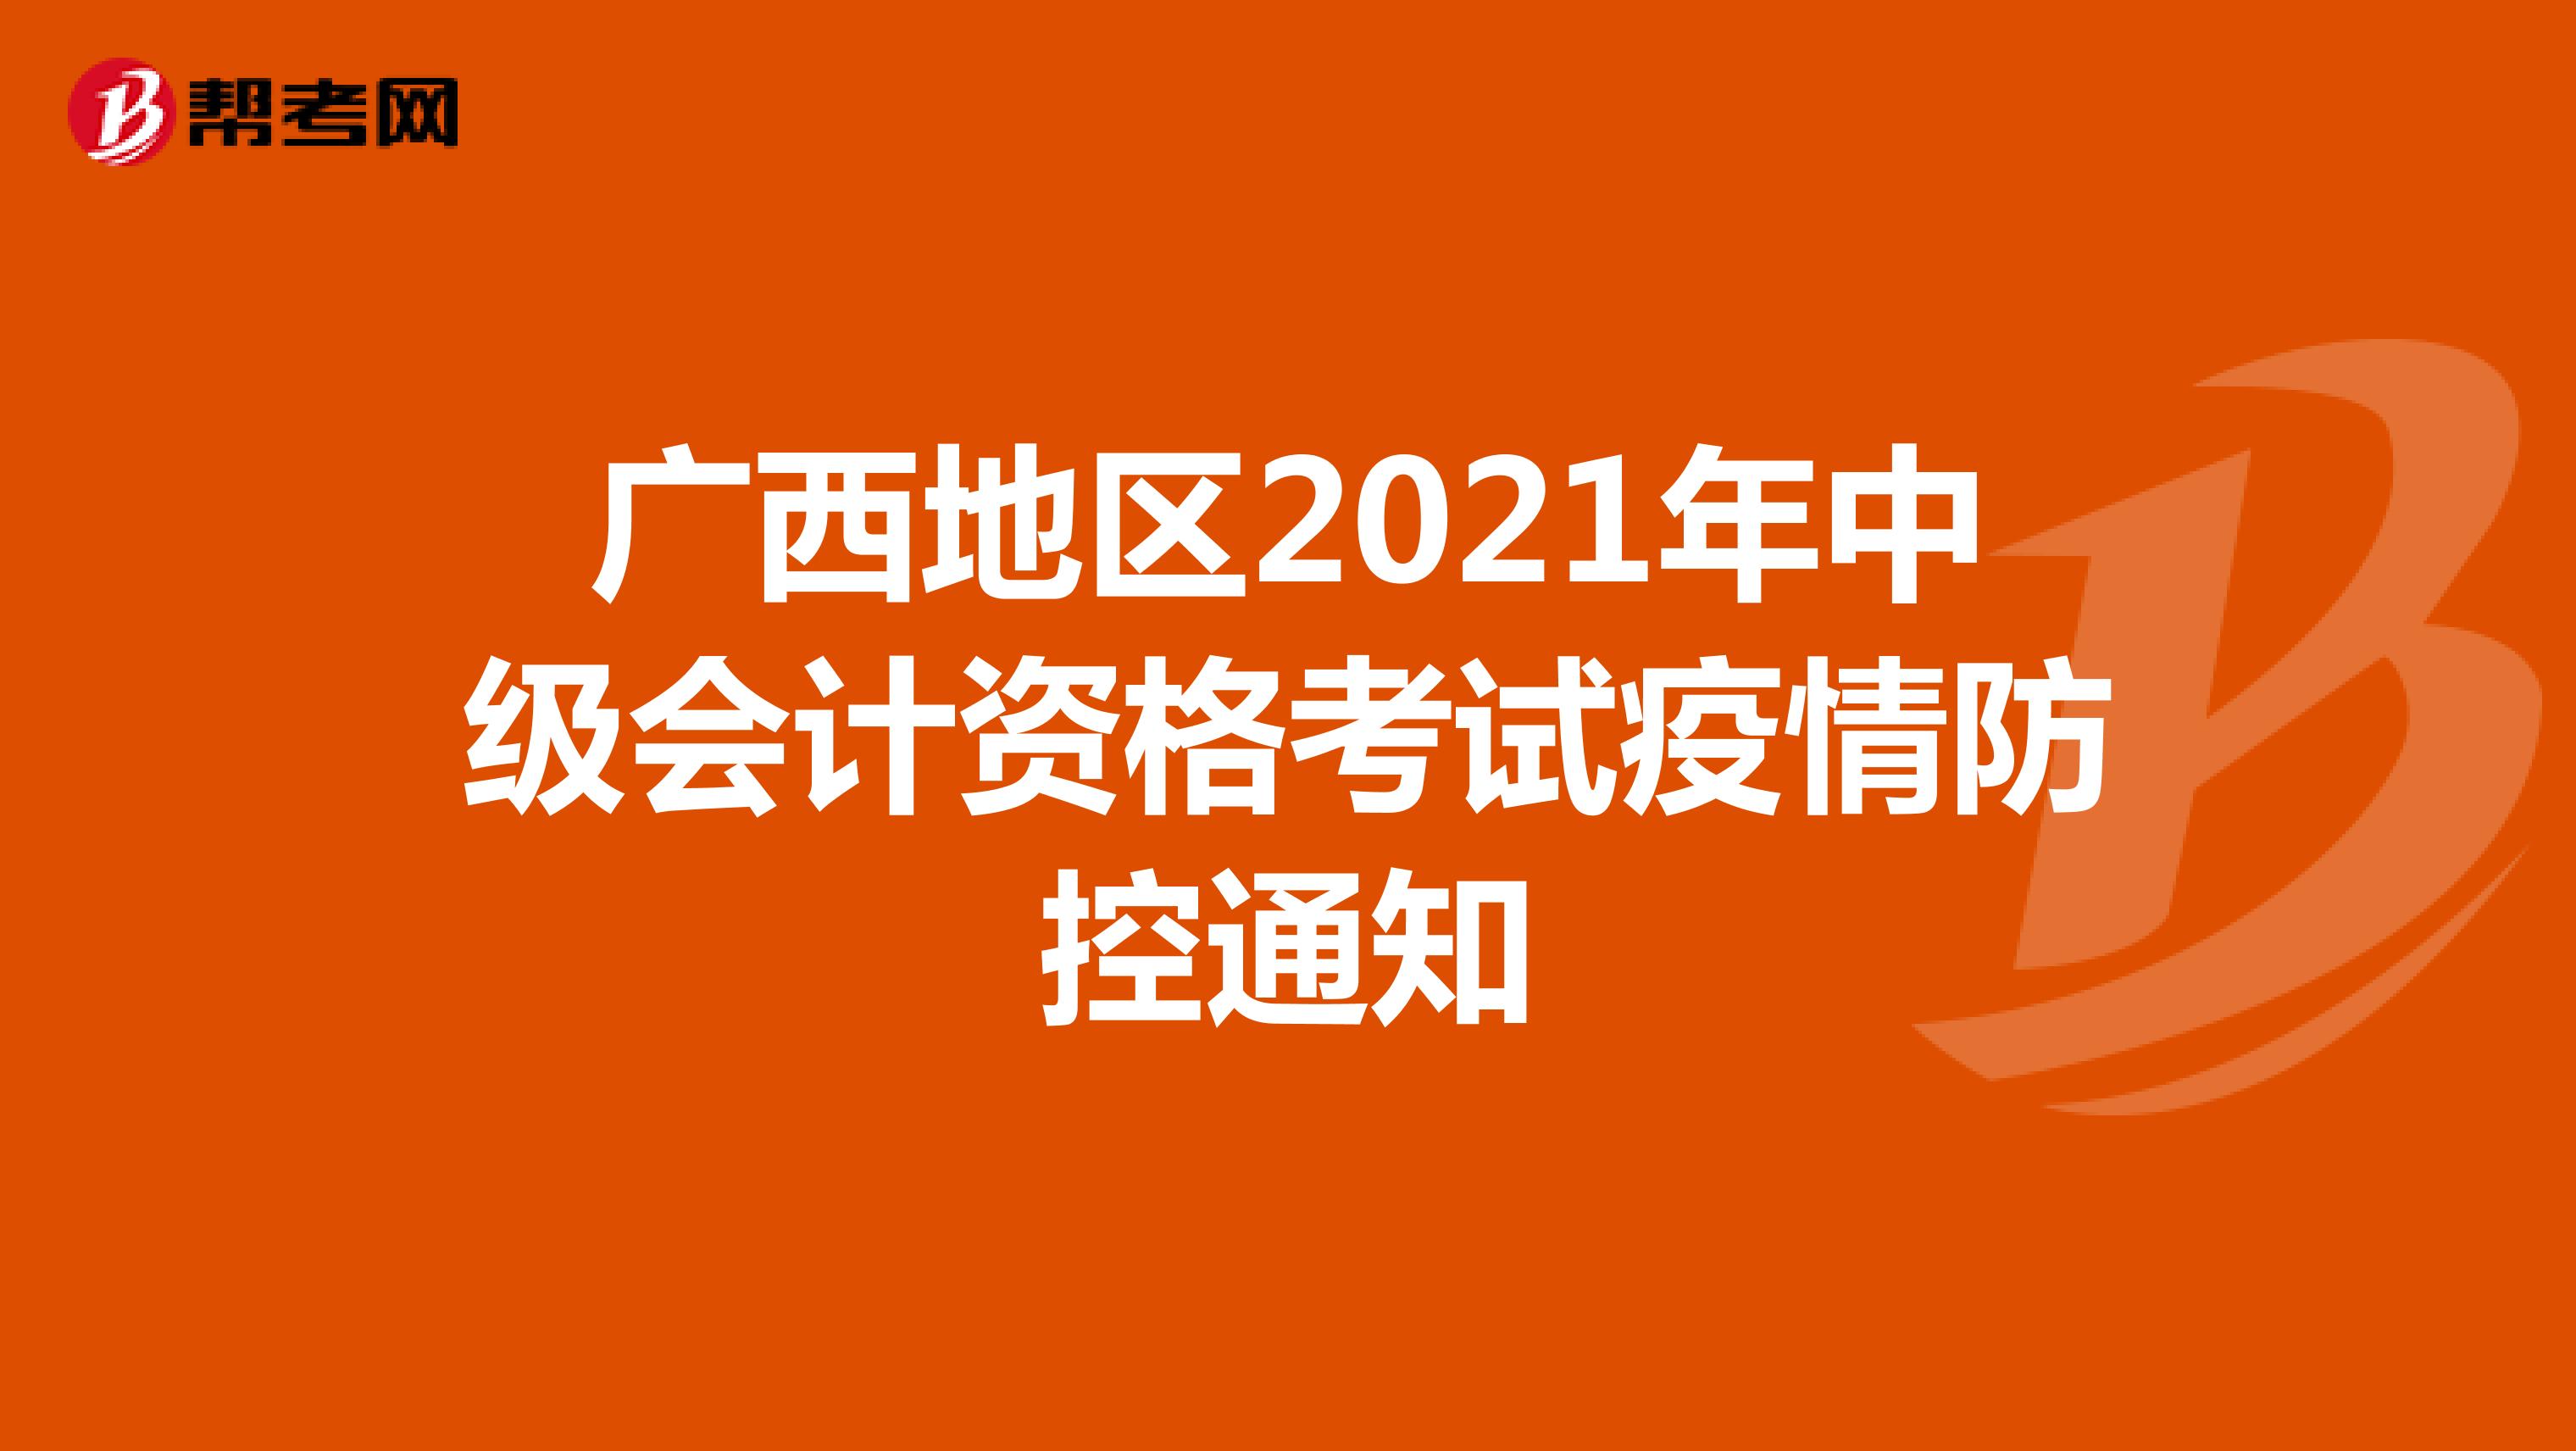 广西地区2021年中级会计资格考试疫情防控通知